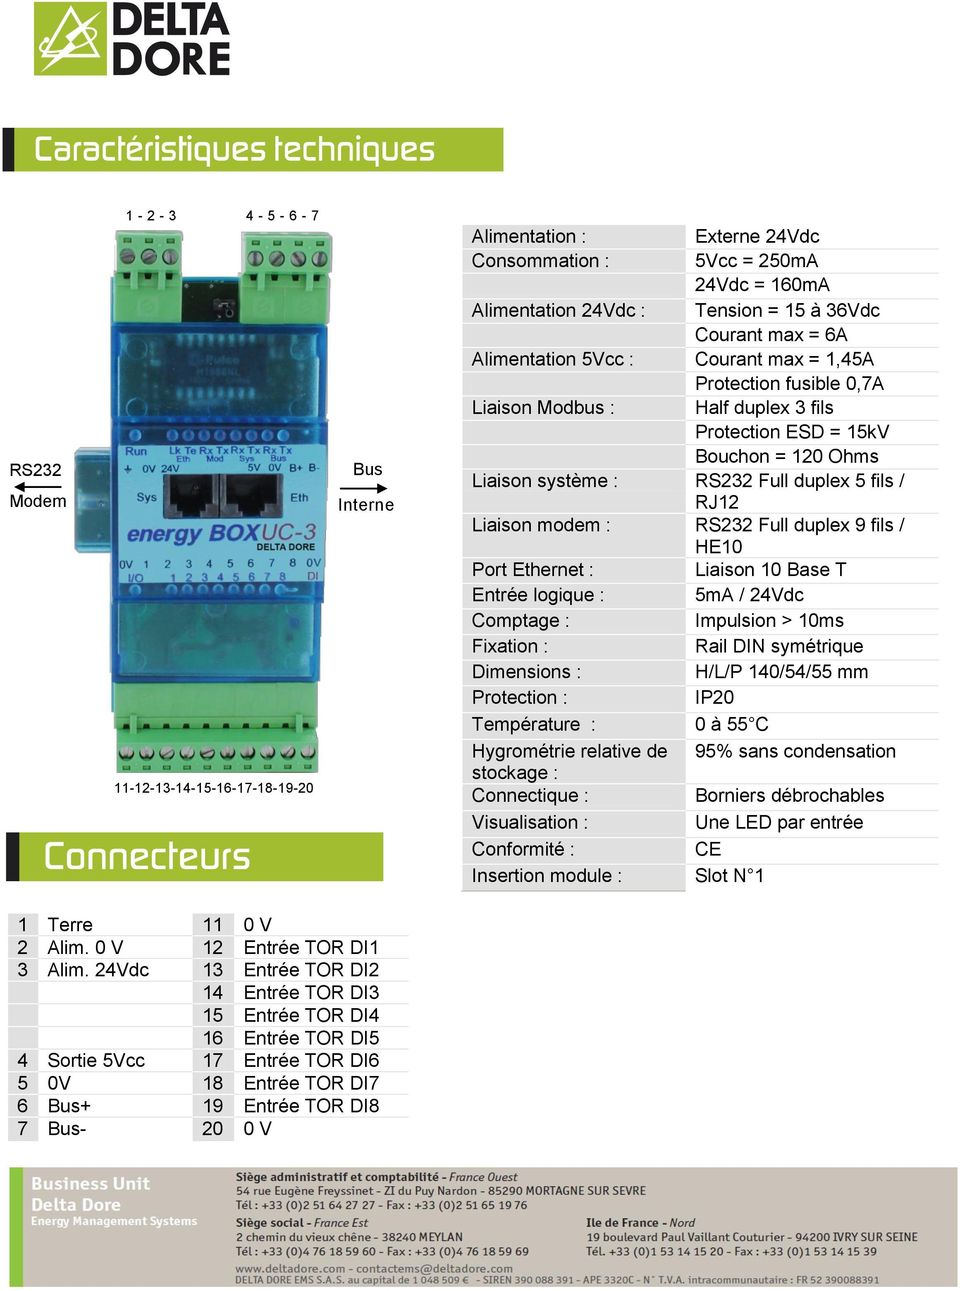 Liaison modem : RS232 Full duplex 9 fils / HE10 Port Ethernet : Liaison 10 Base T Entrée logique : 5mA / 24Vdc Comptage : Impulsion > 10ms Fixation : Rail DIN symétrique Dimensions : H/L/P 140/54/55